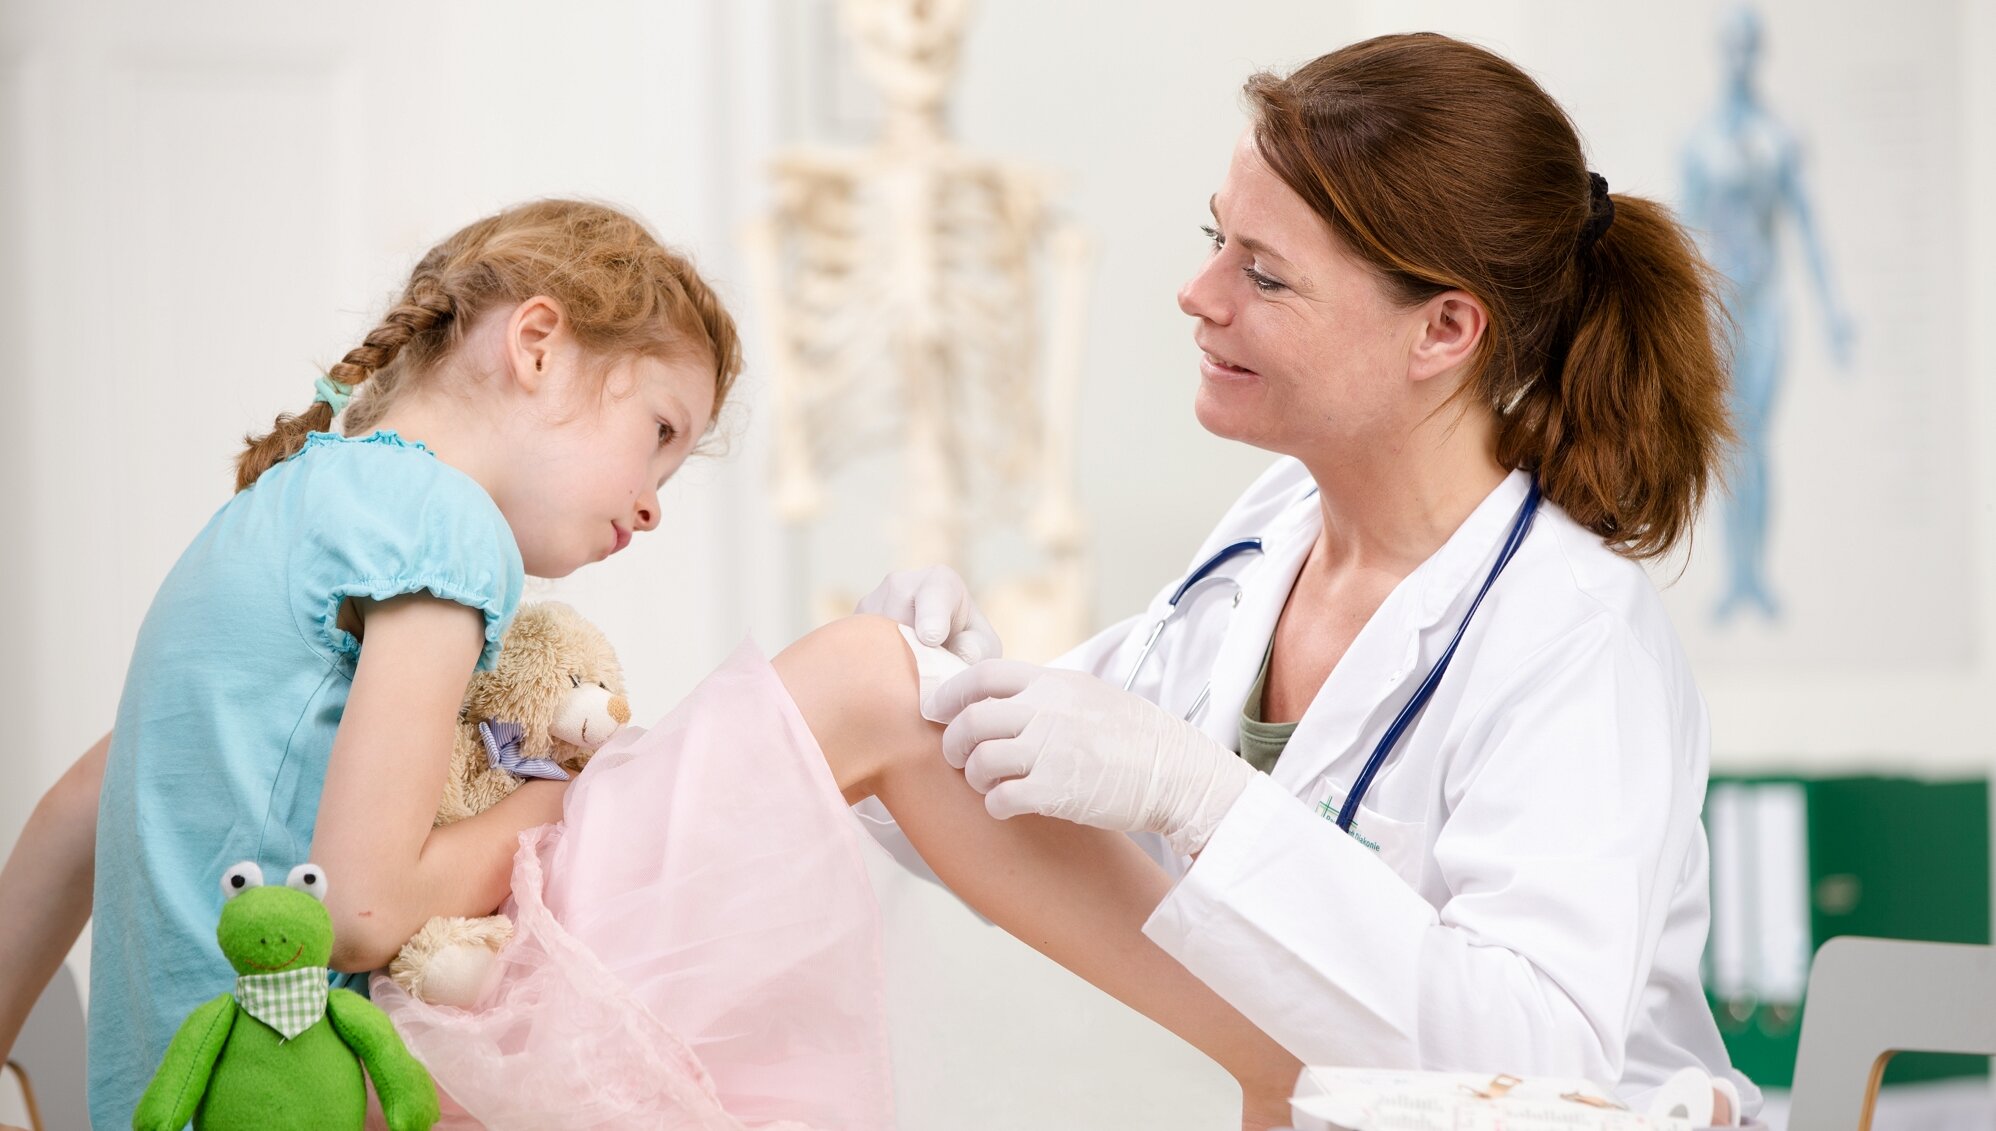 Junge Ärztin verbindet im Behandlungszimmer das Bein eines Kindes. Das Kind hat ein Kuscheltier im Arm und schaut auf das eigene Bein.